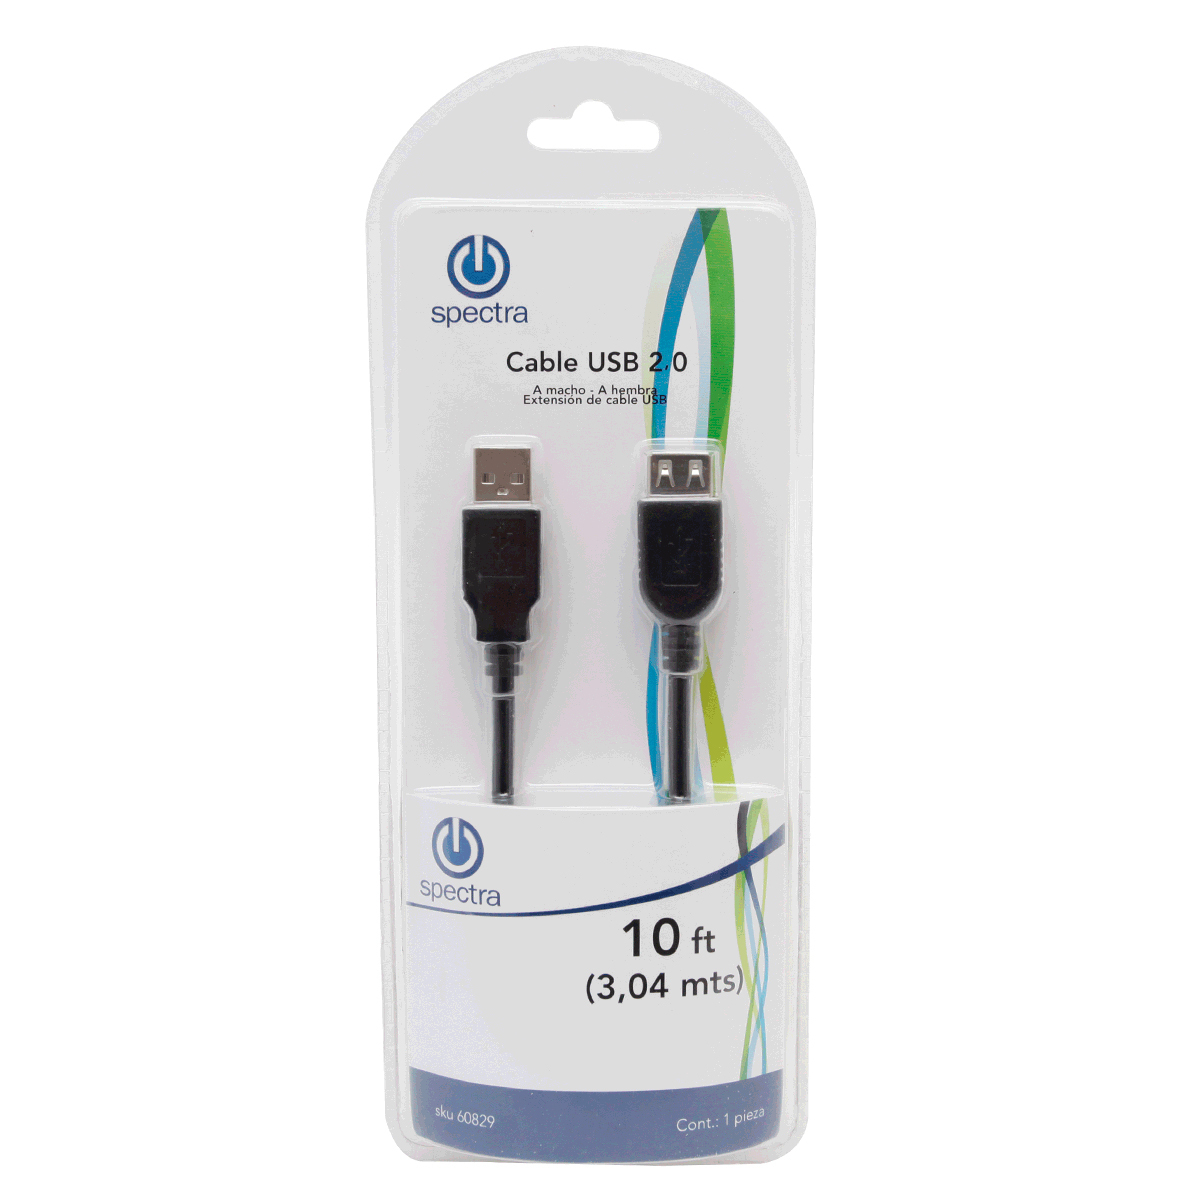 Cable divisor USB Y, conector de cable de extensión macho a 2 hembra,  extensor de puerto USB doble, adaptador de alimentación dividida de datos y